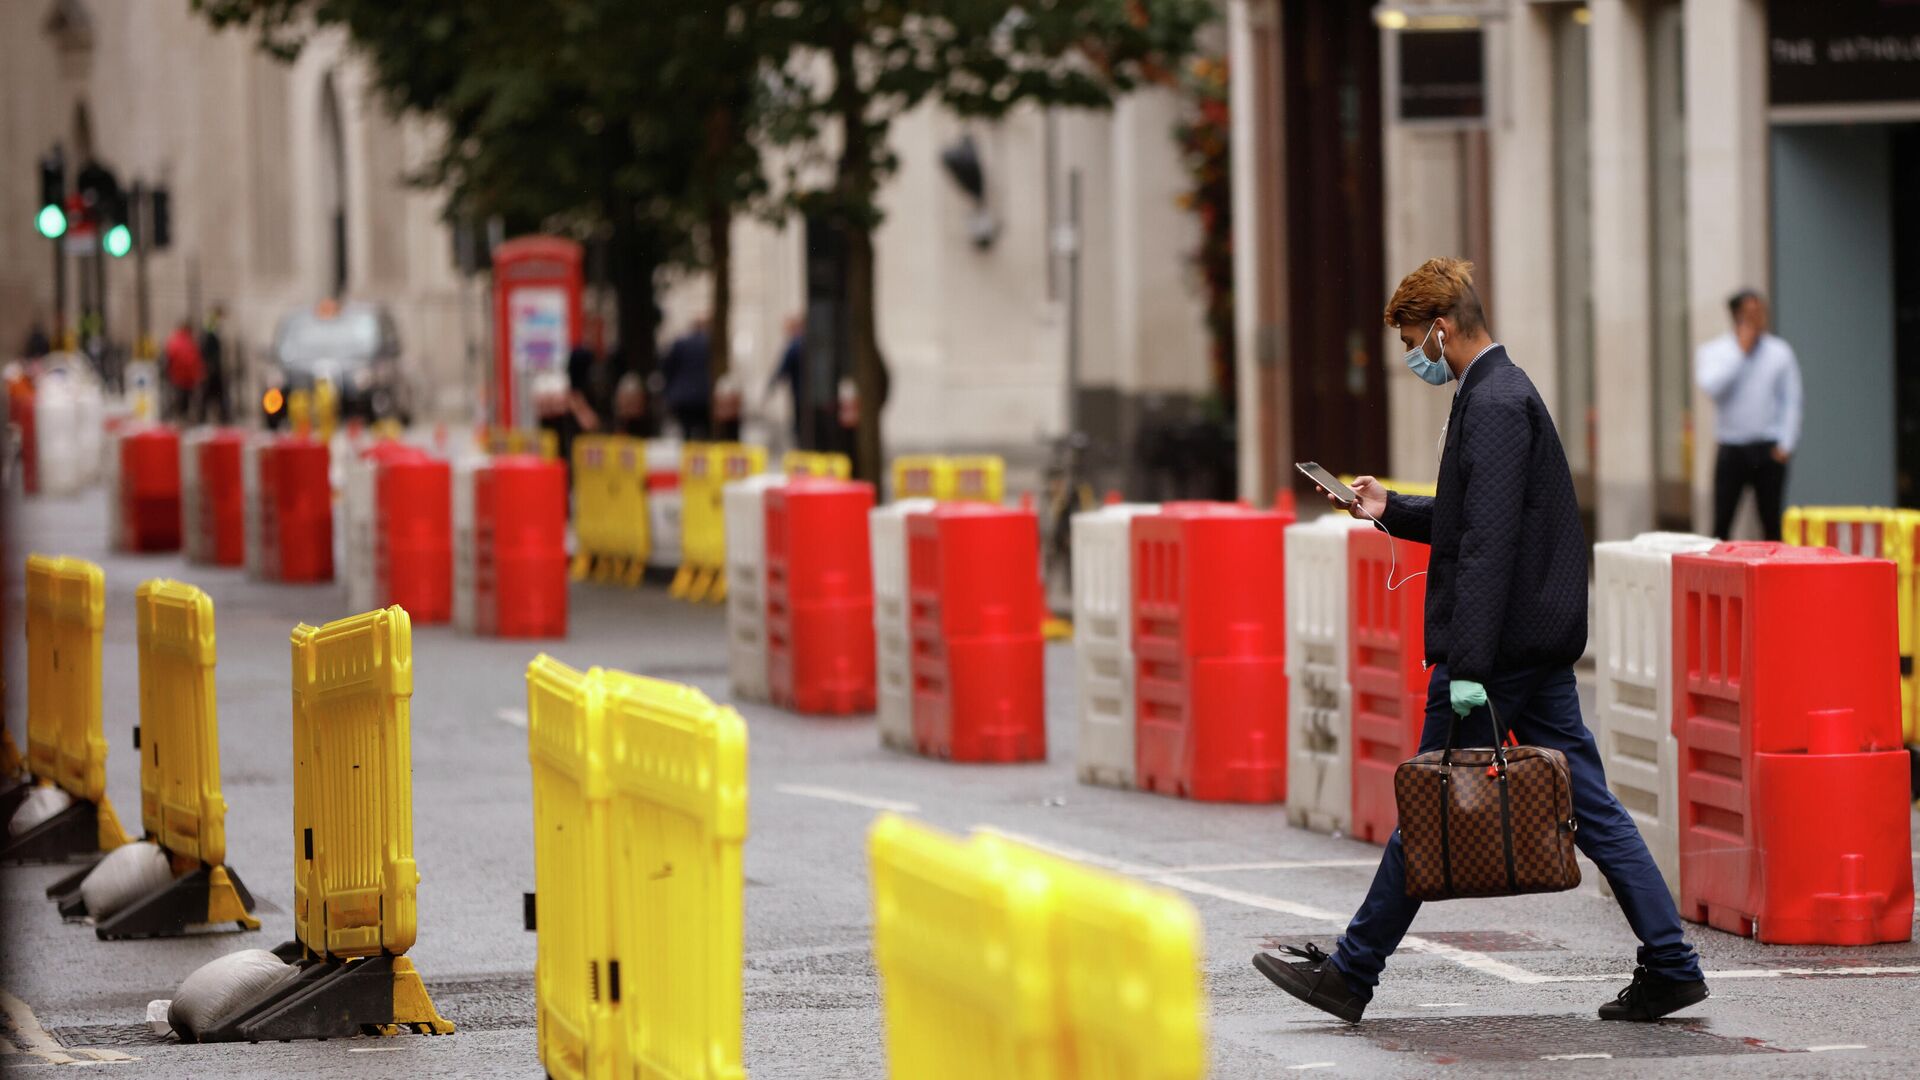 Мужчина в защитной маске переходит дорогу с установленными на ней барьерами для социального дистанцирования в Лондоне - РИА Новости, 1920, 24.09.2020